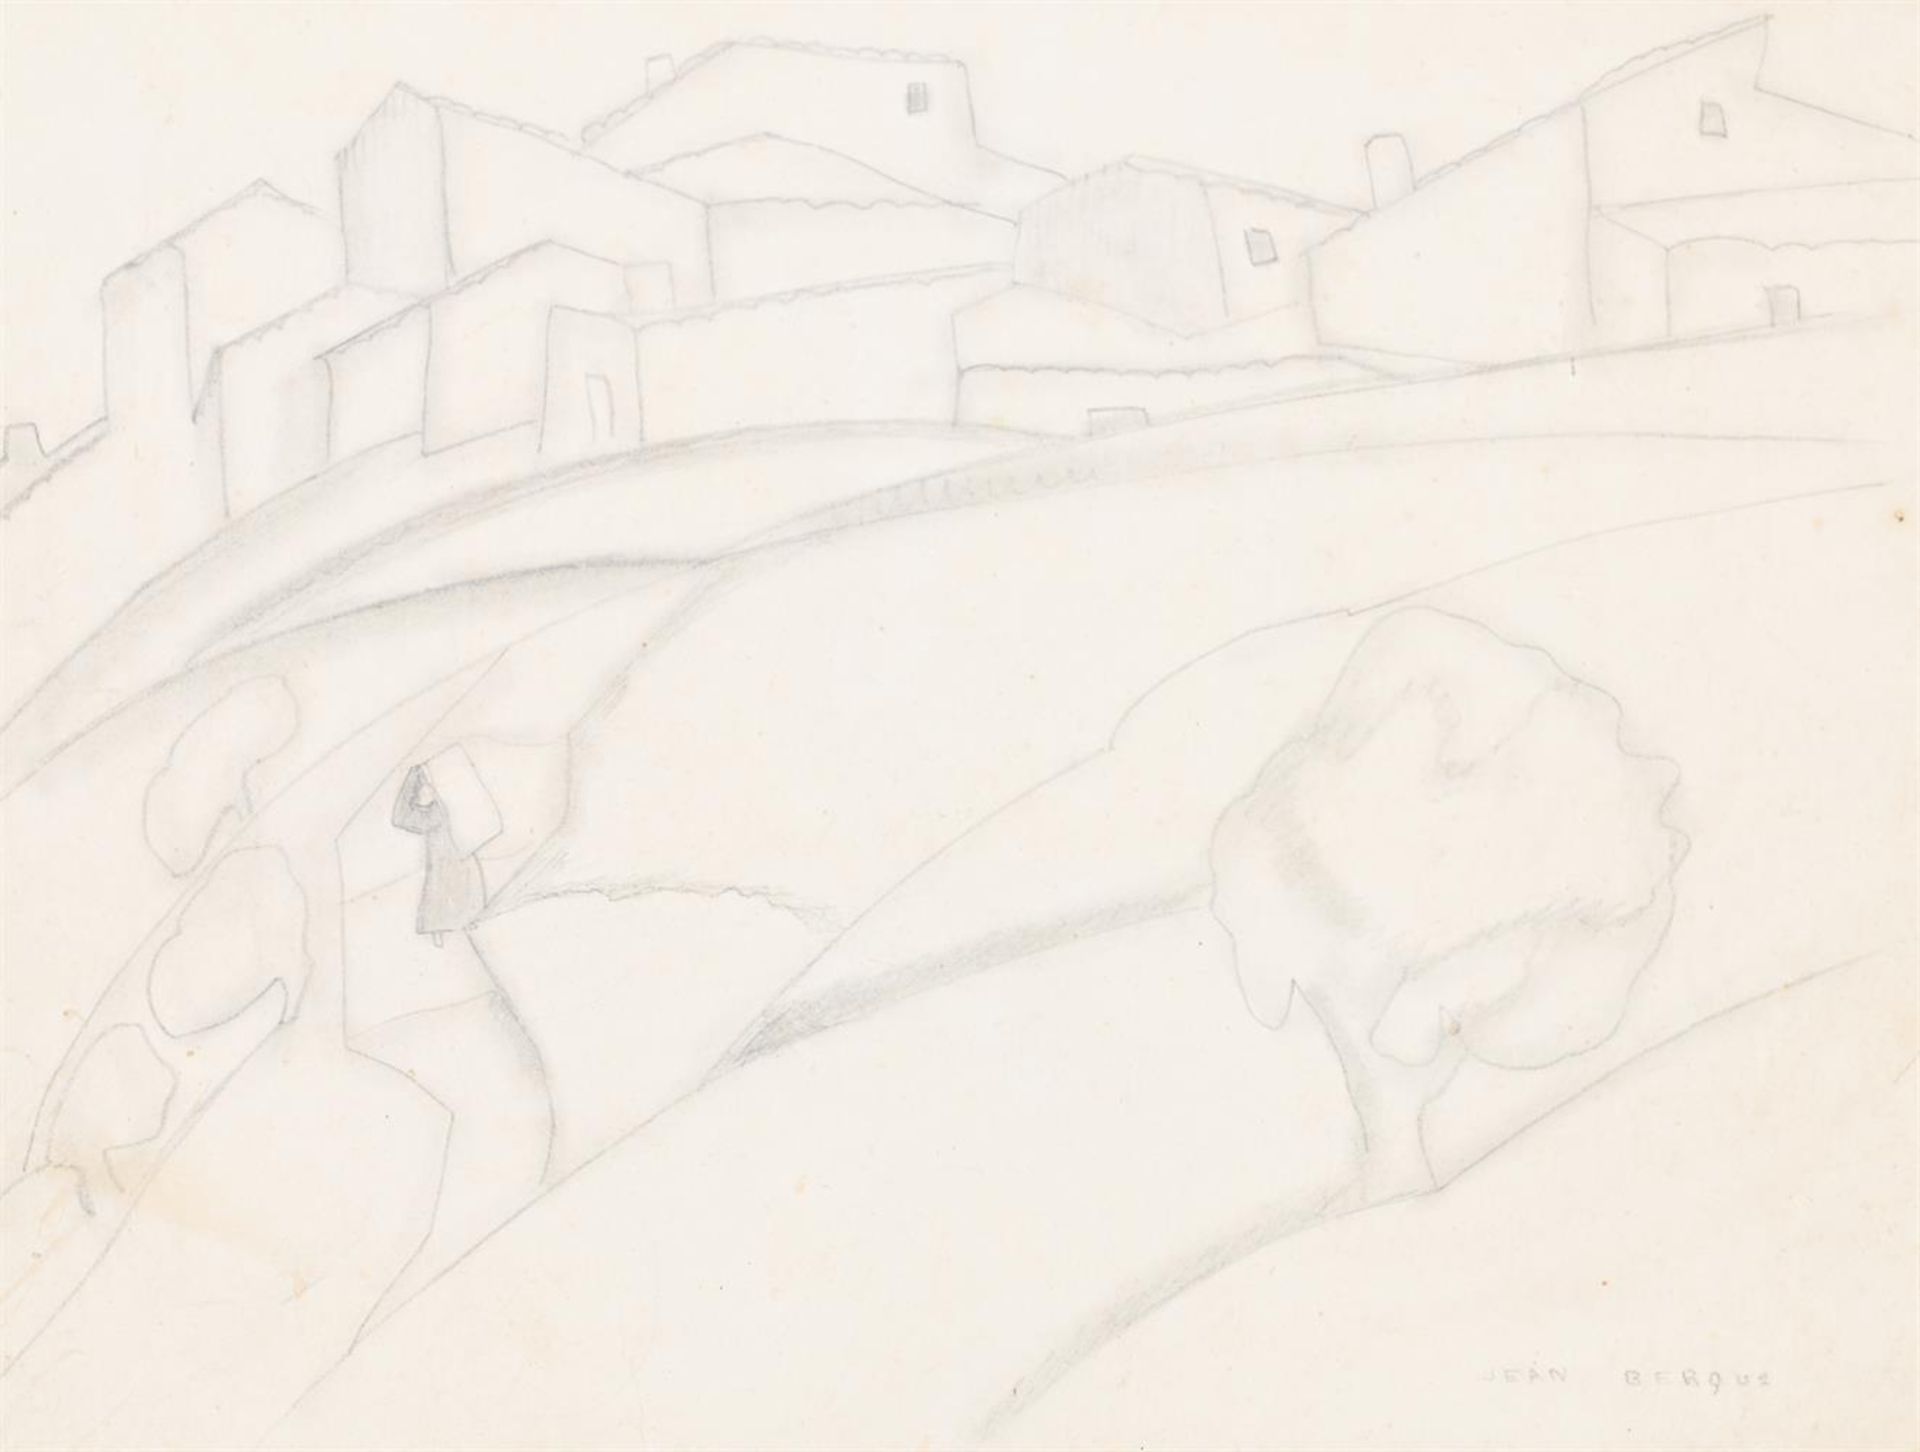 λ JEAN BERQUE (FRENCH 1896-1954), VIEW OF A TOWN ON A HILL